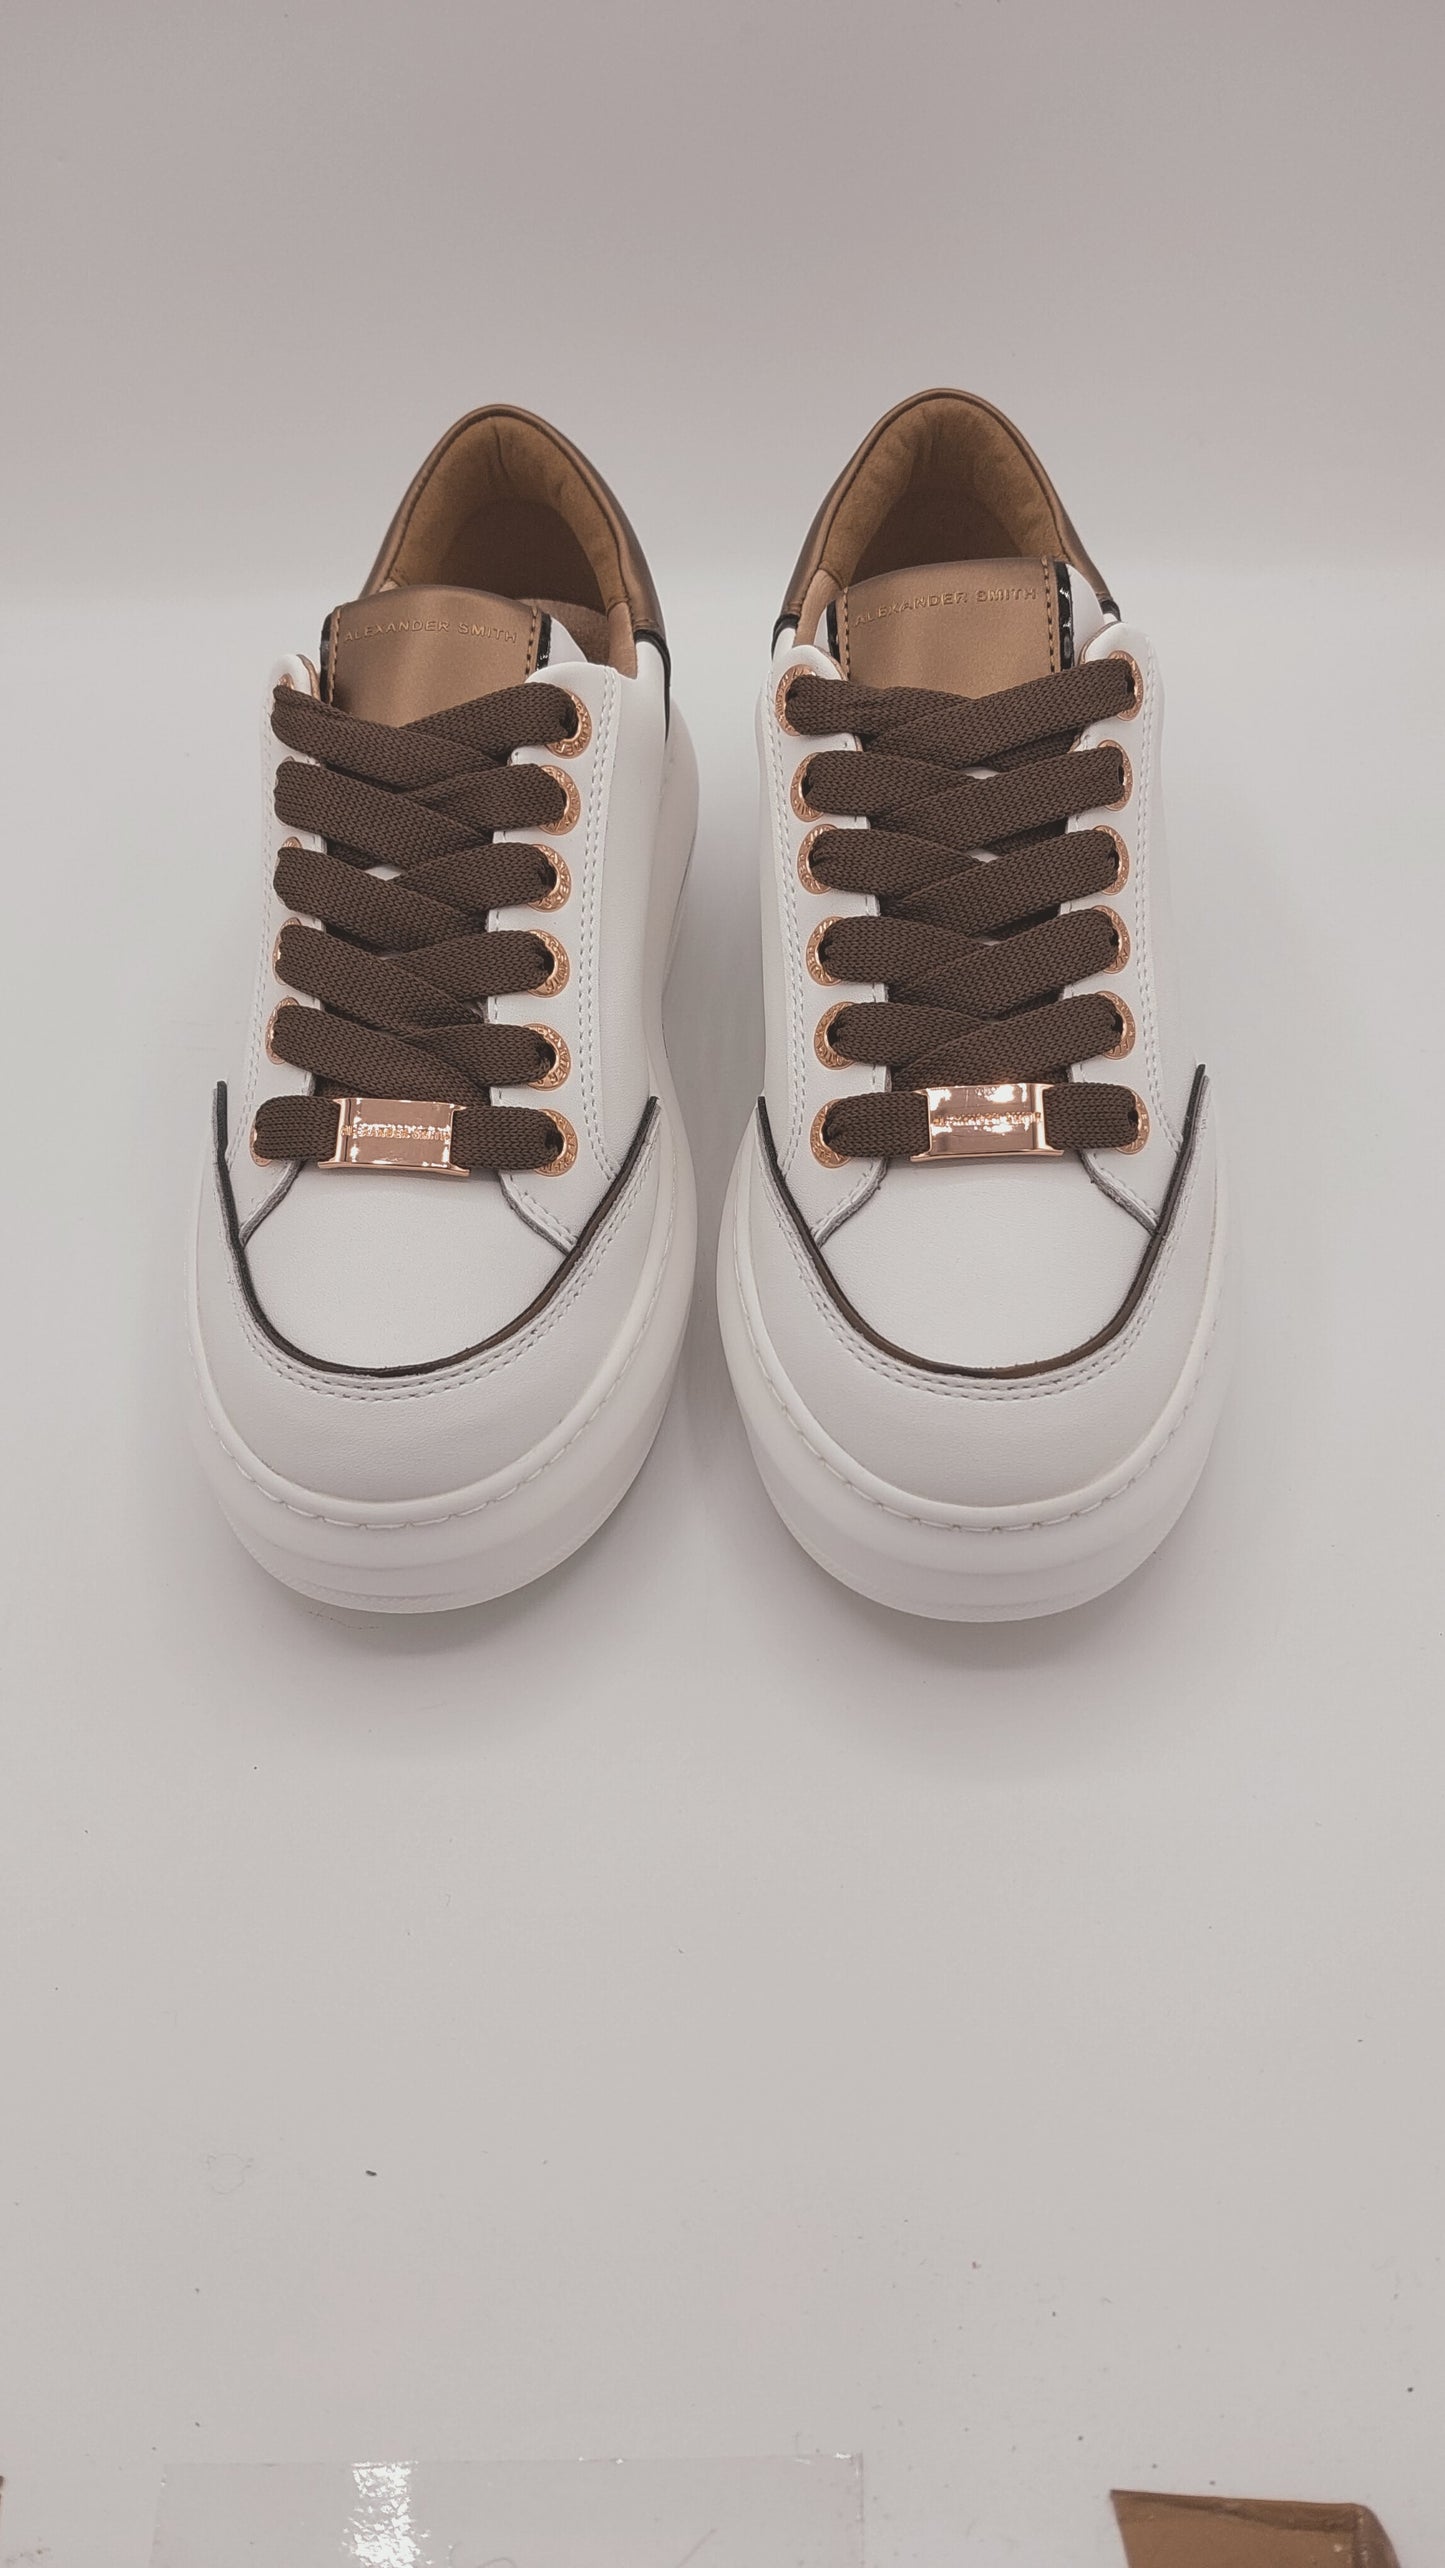 Sneakers Alexander Smith in pelle bianca con lacci in tessuto marrone